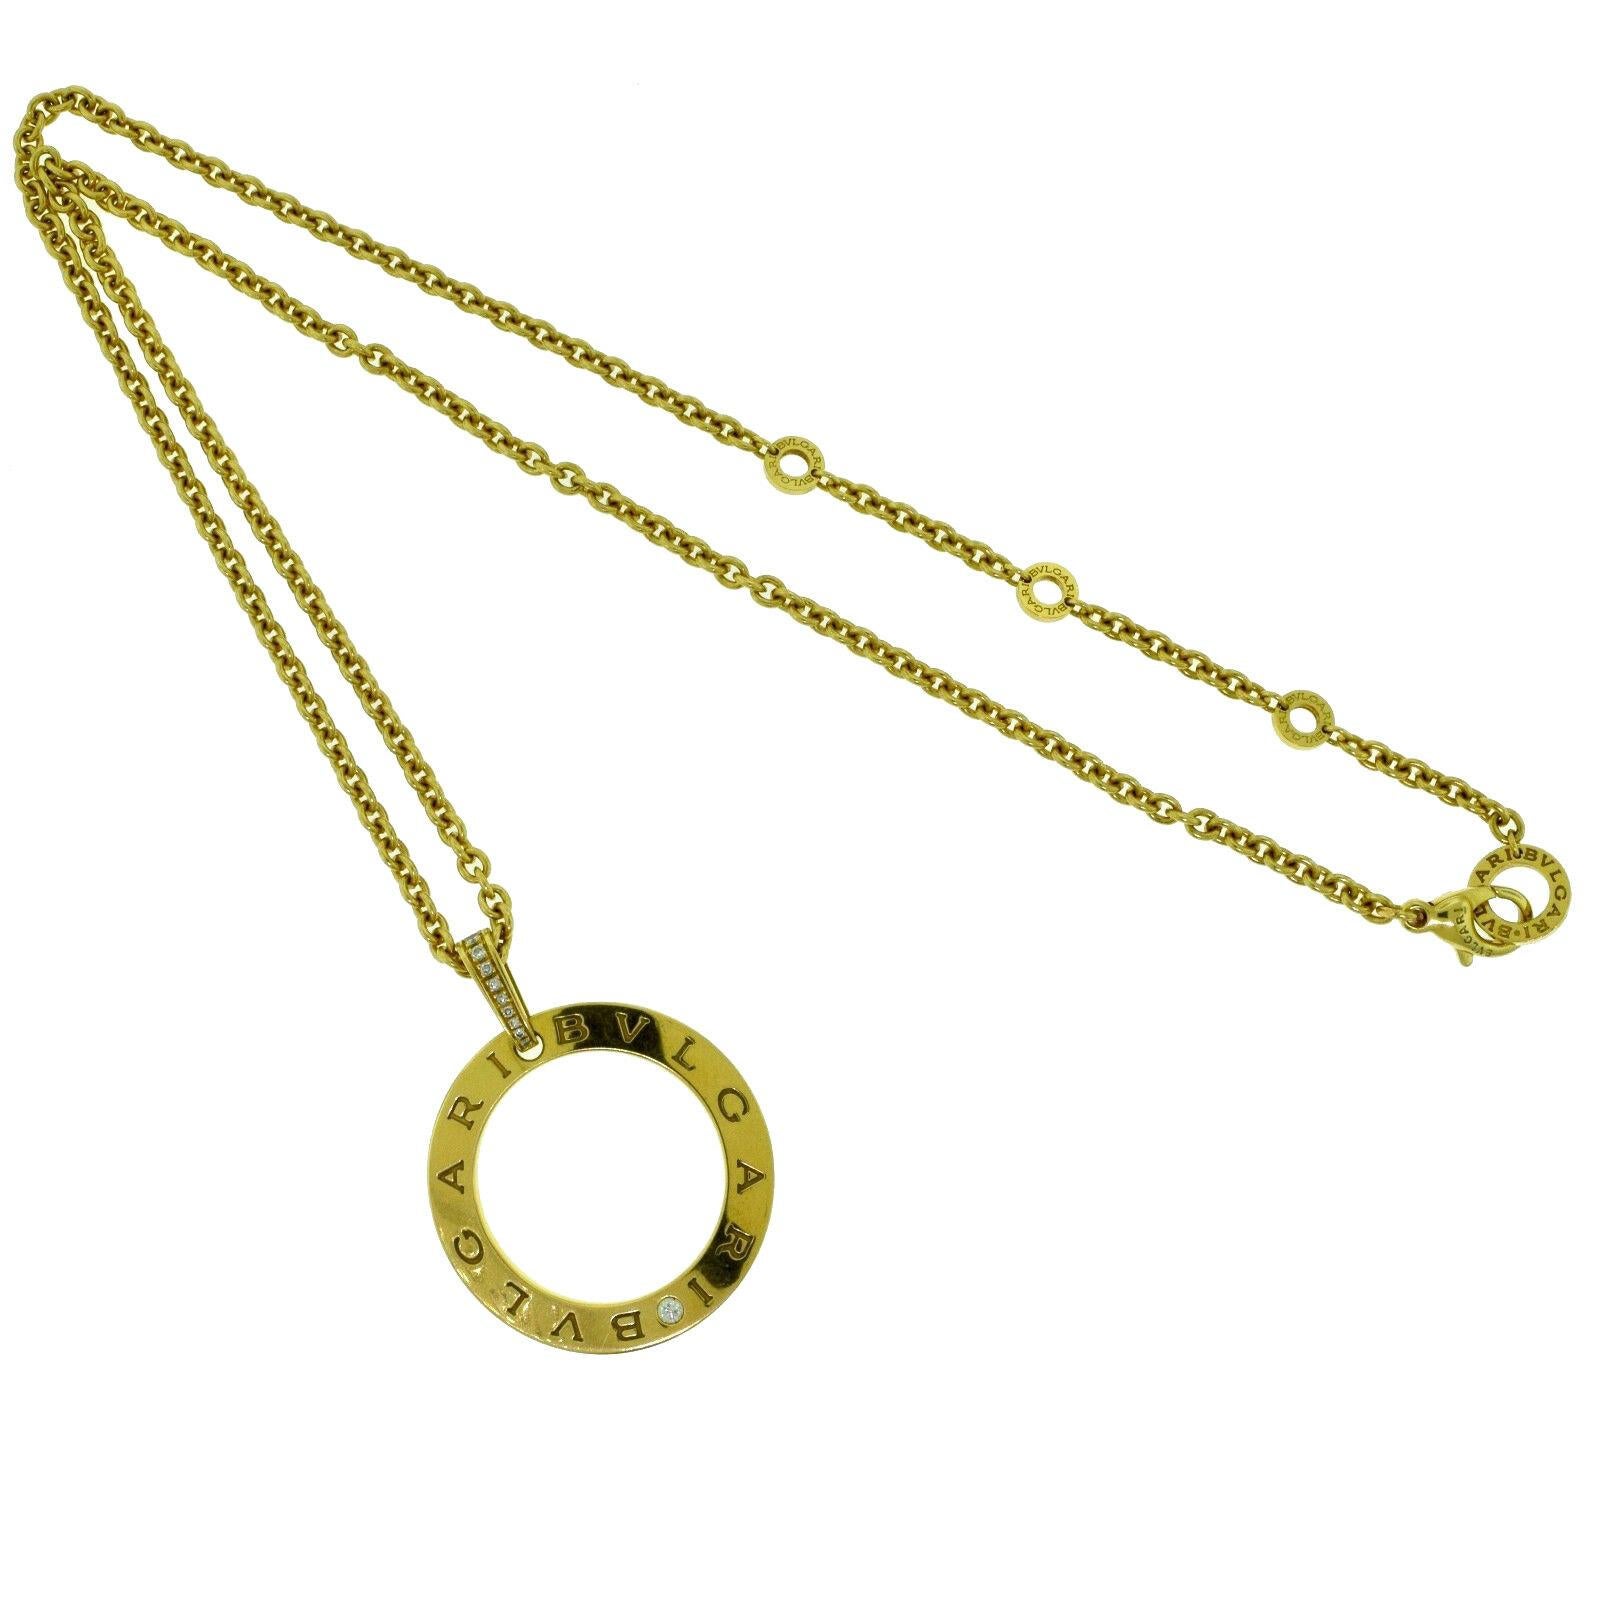 bvlgari circle pendant